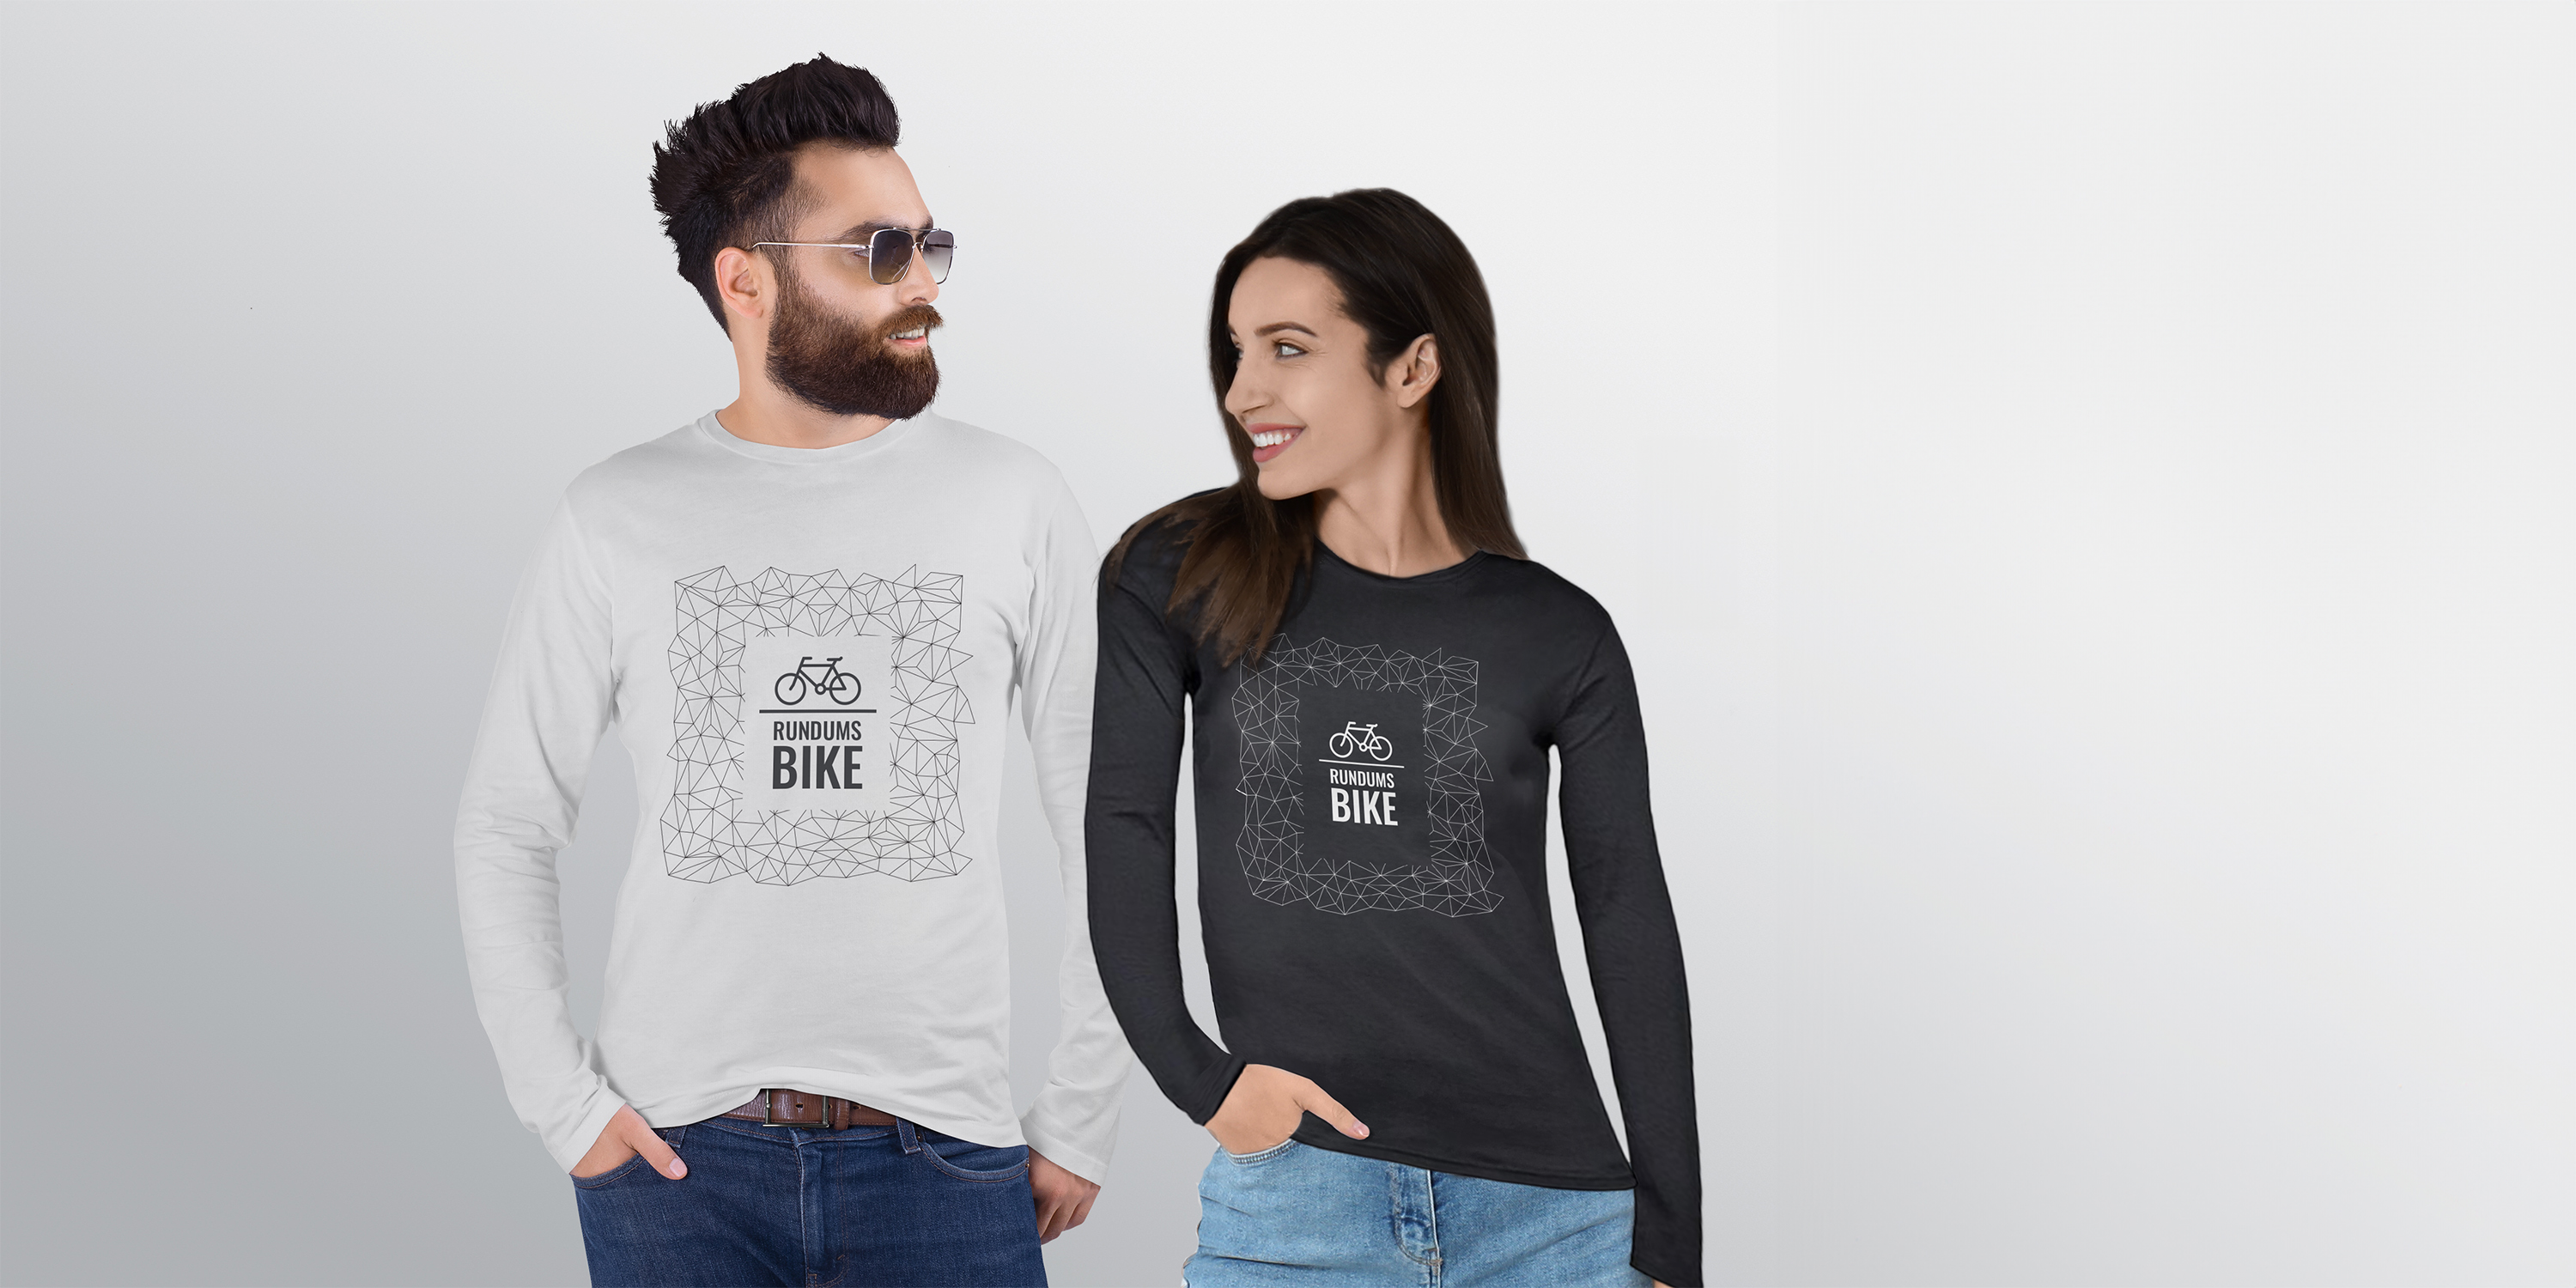 Pärchen trägtLangarm-T-Shirts mit Rundhalsausschnitt